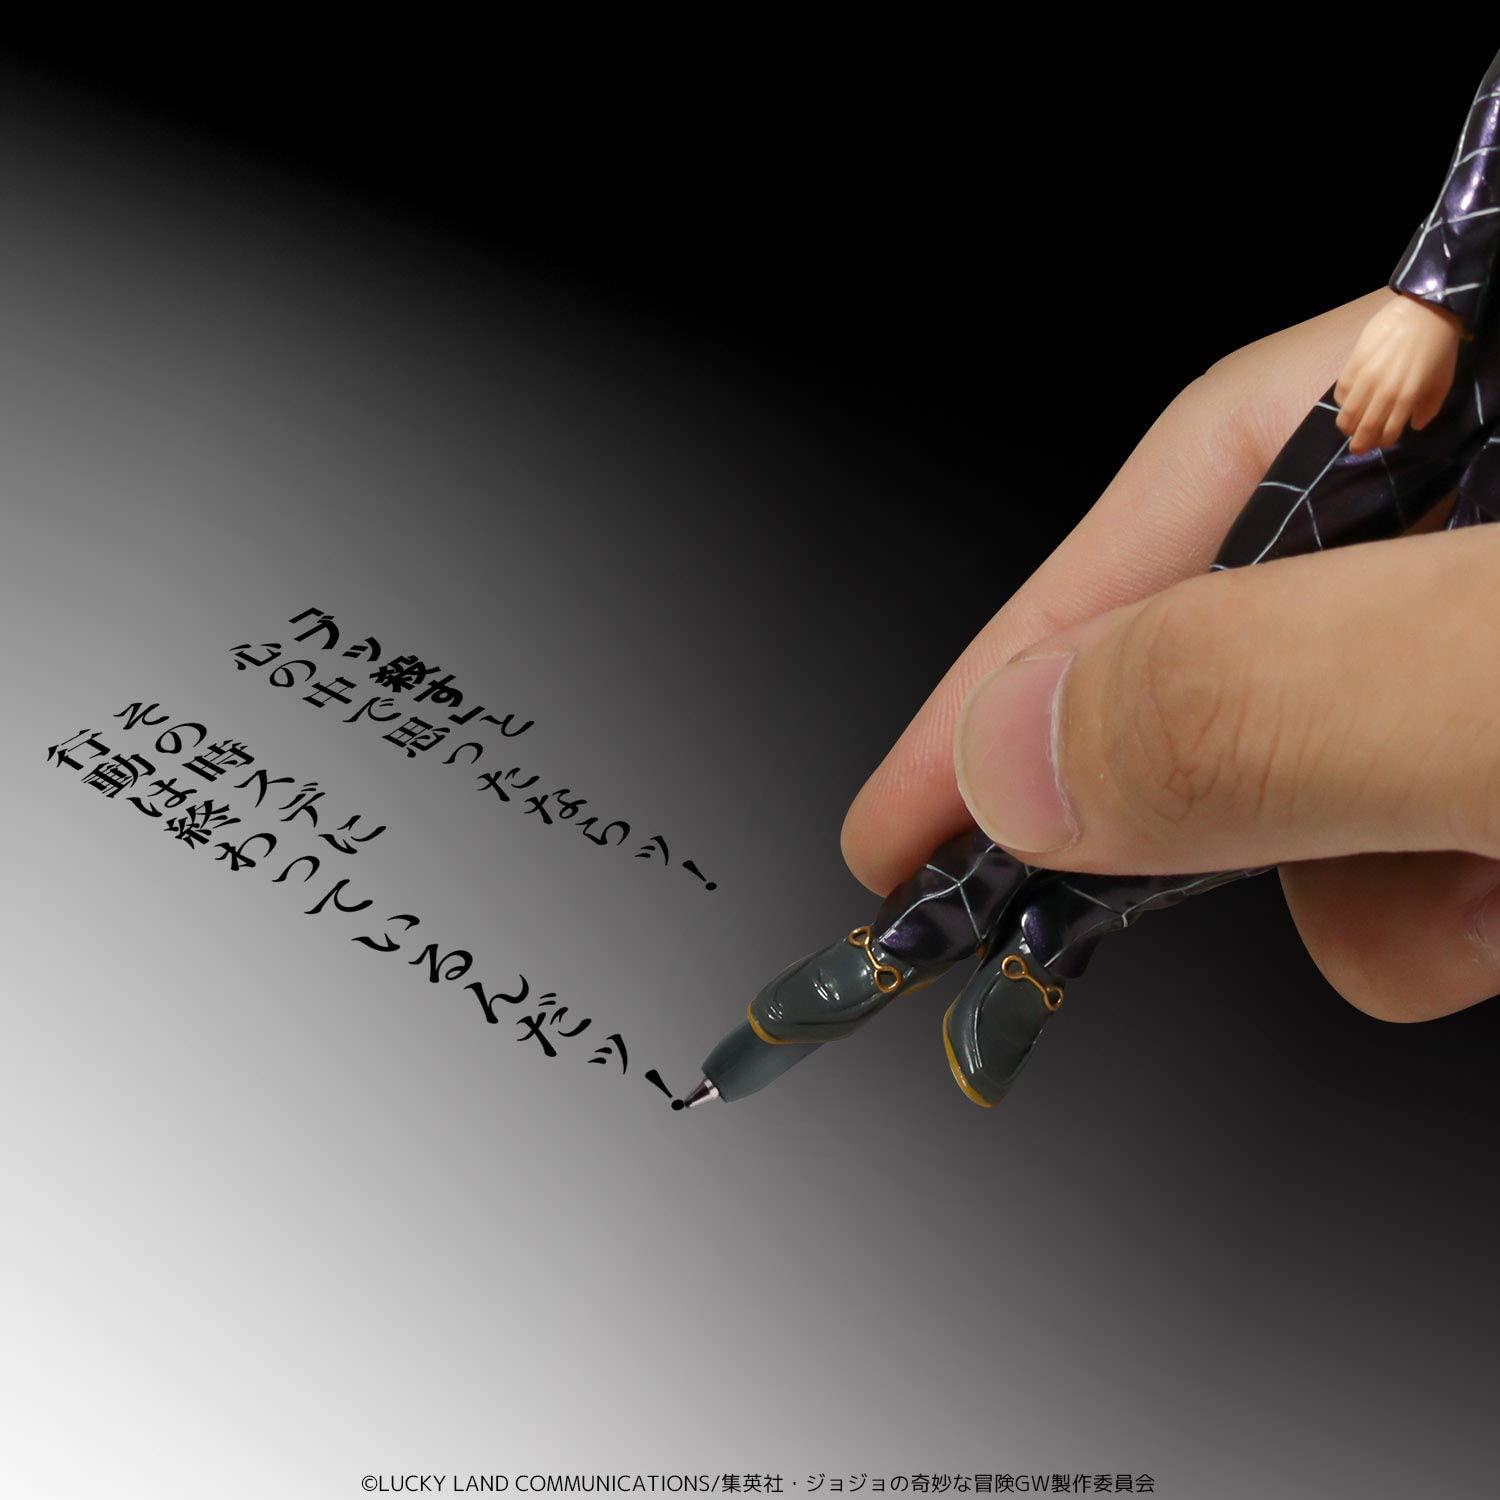 Sen-ti-nel - Prosciutto [JoJo's Bizarre Adventure] Sentinel Figure Pen Super Anime Store